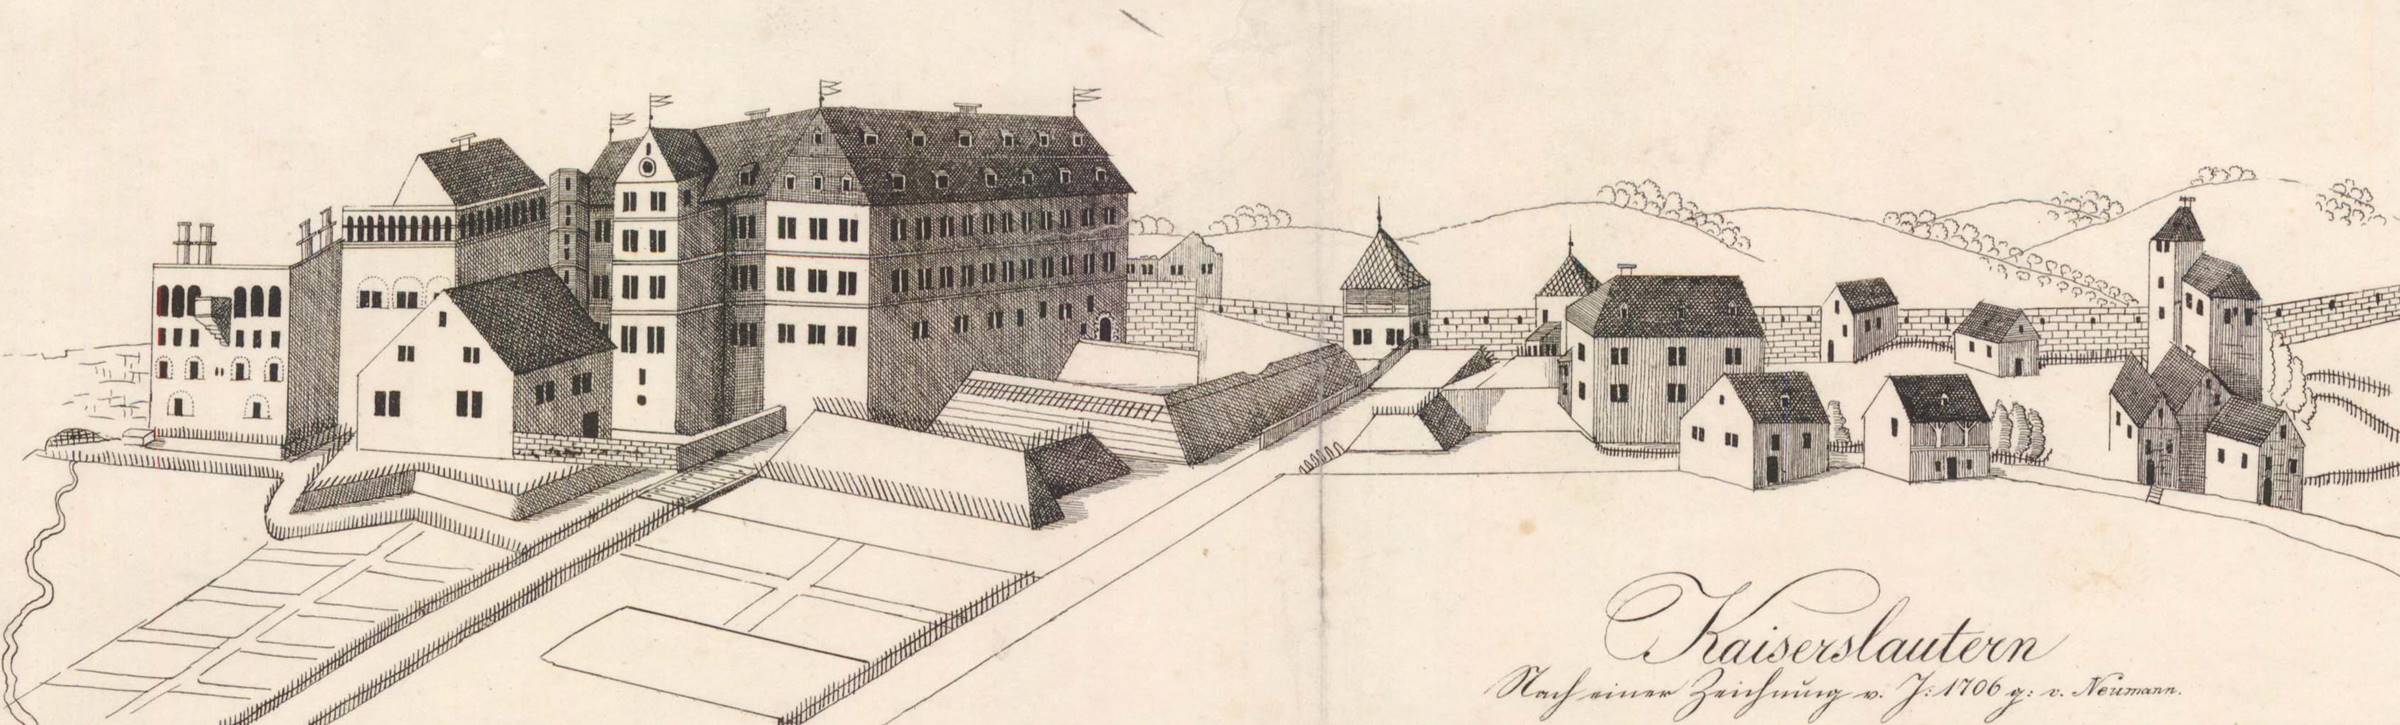 Burg und Schloss 1706 Zeichnung Martin von Neumann 2